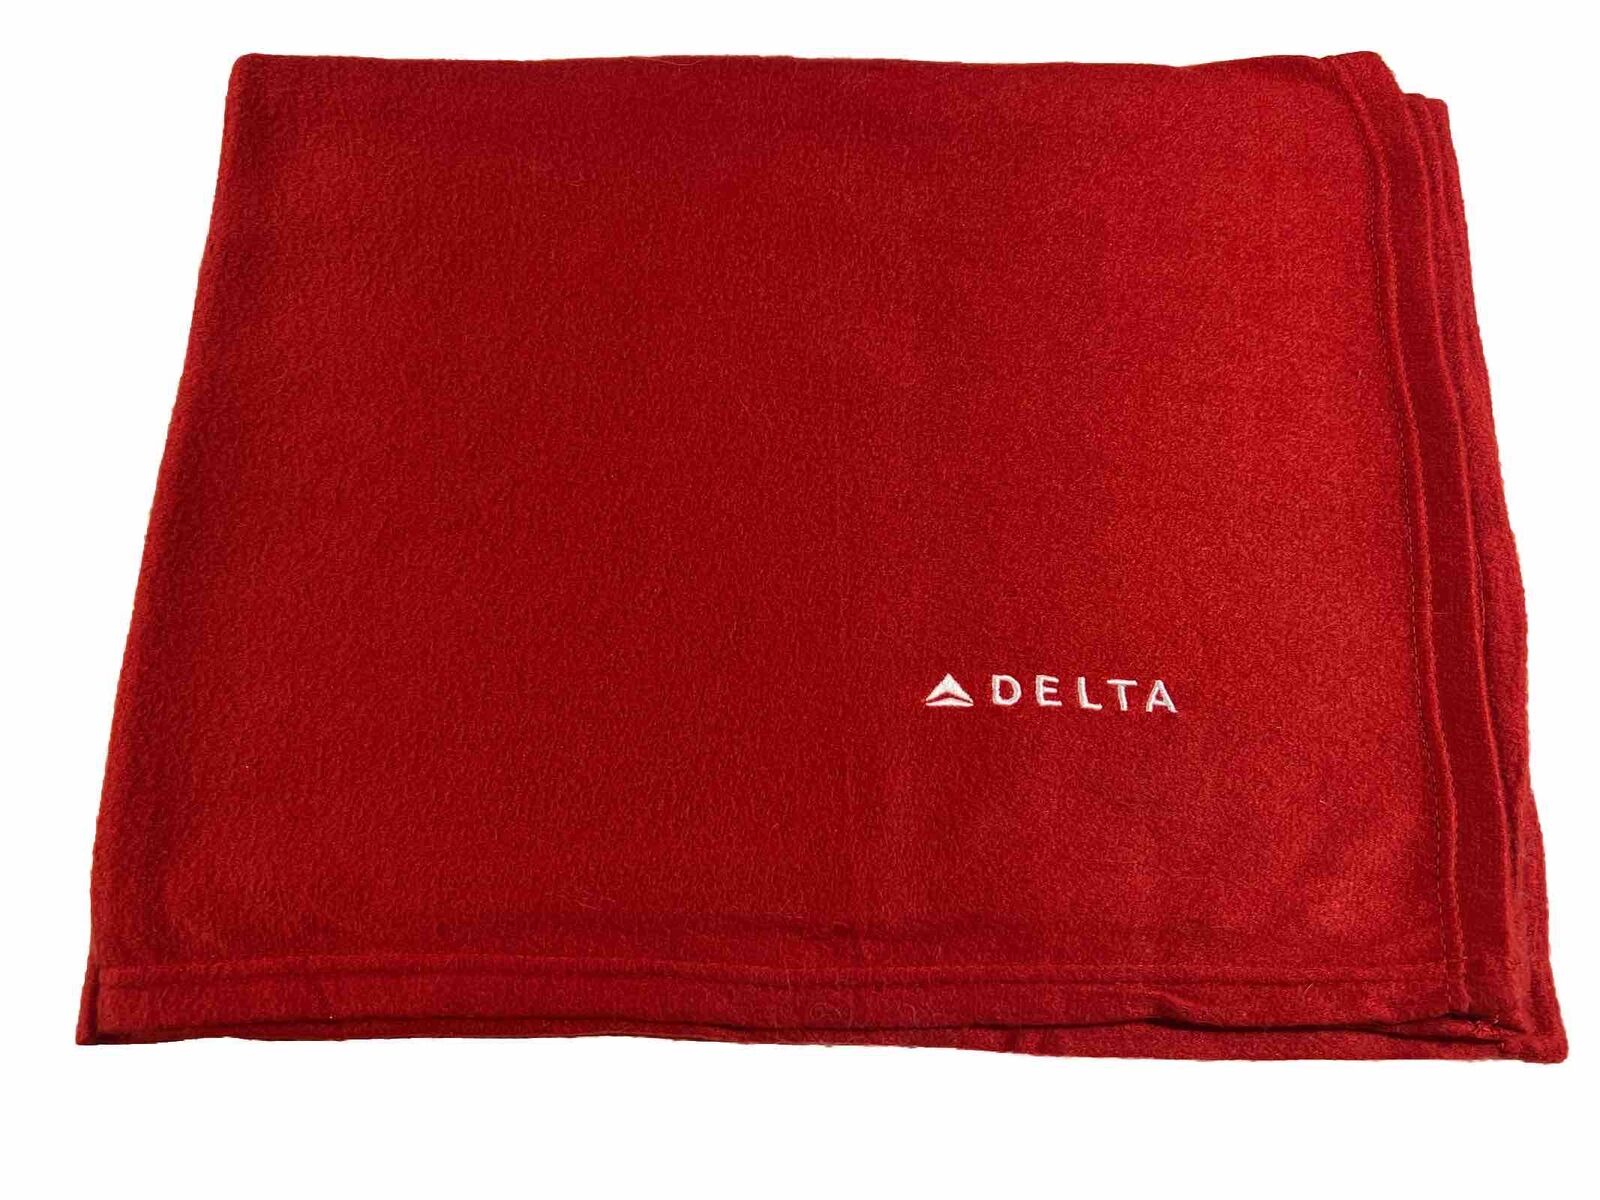 Delta Airlines Blanket Red Blanket By DL